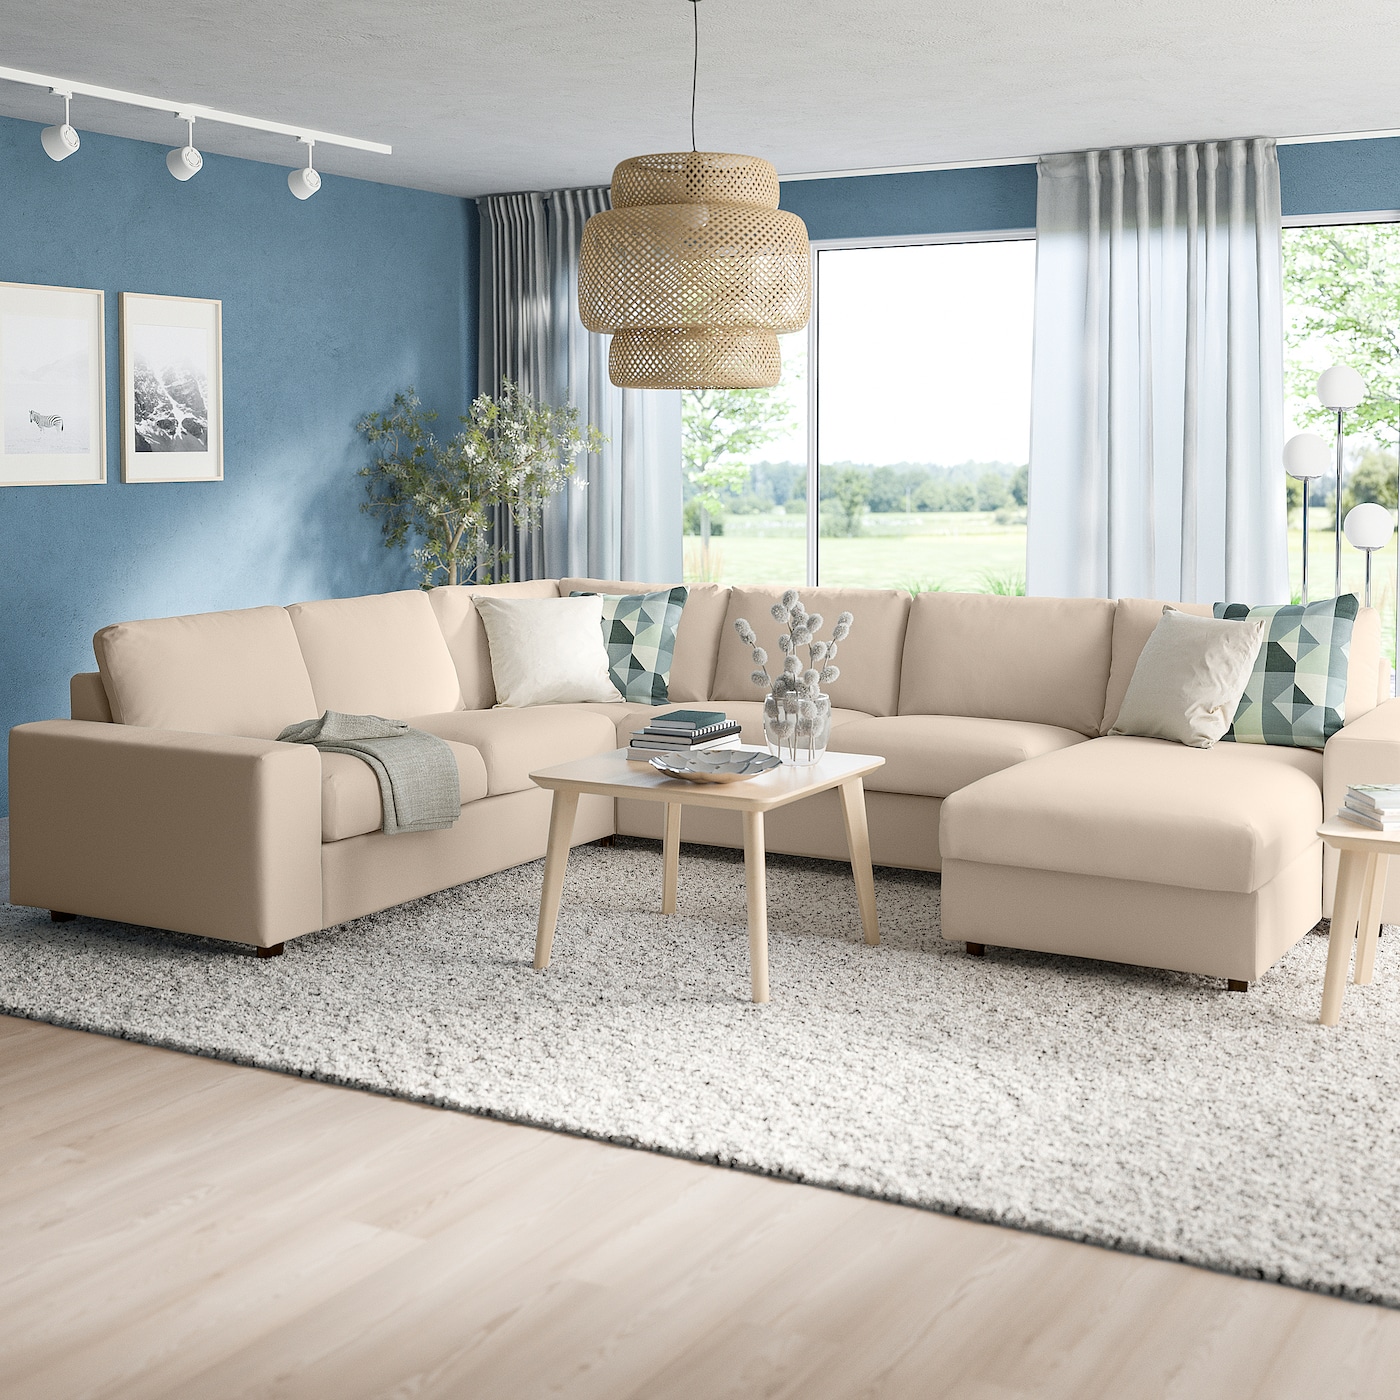 ВИМЛЕ Диван угловой, 5-местный. диван+диван, с широкими подлокотниками/Халларп бежевый VIMLE IKEA угловой диван fortune шоколадный